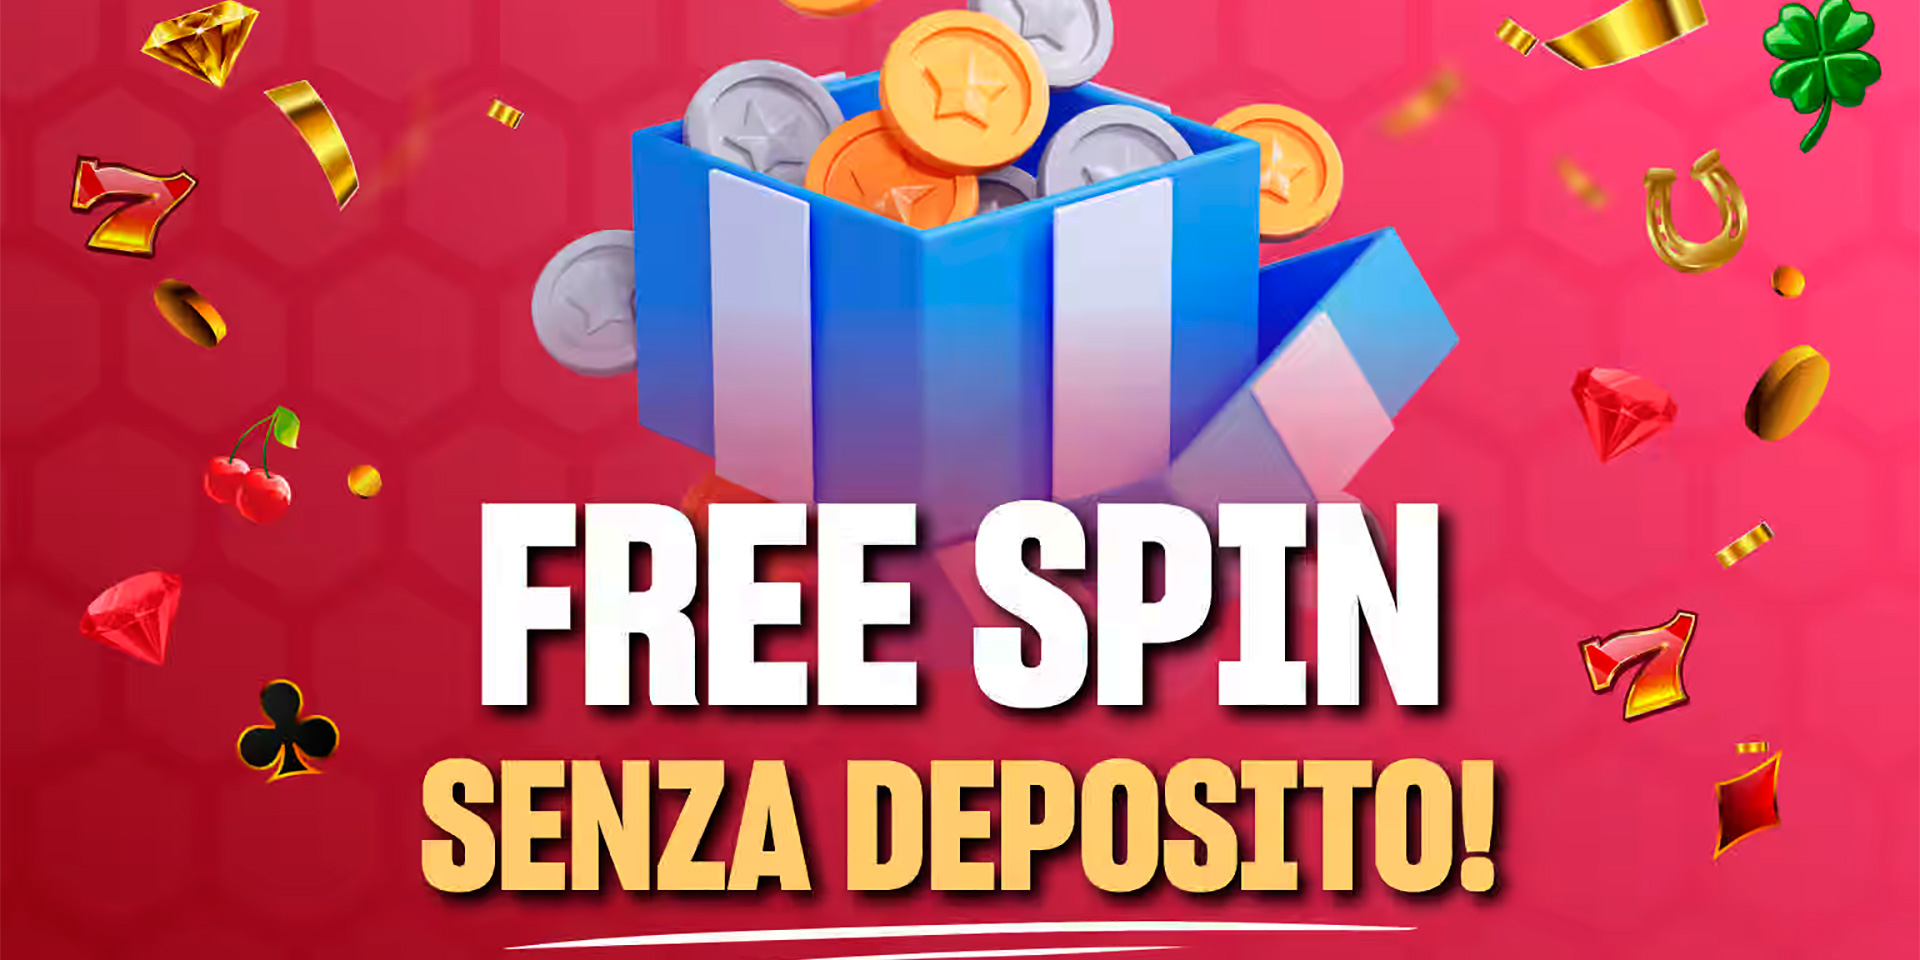 no deposit free spins